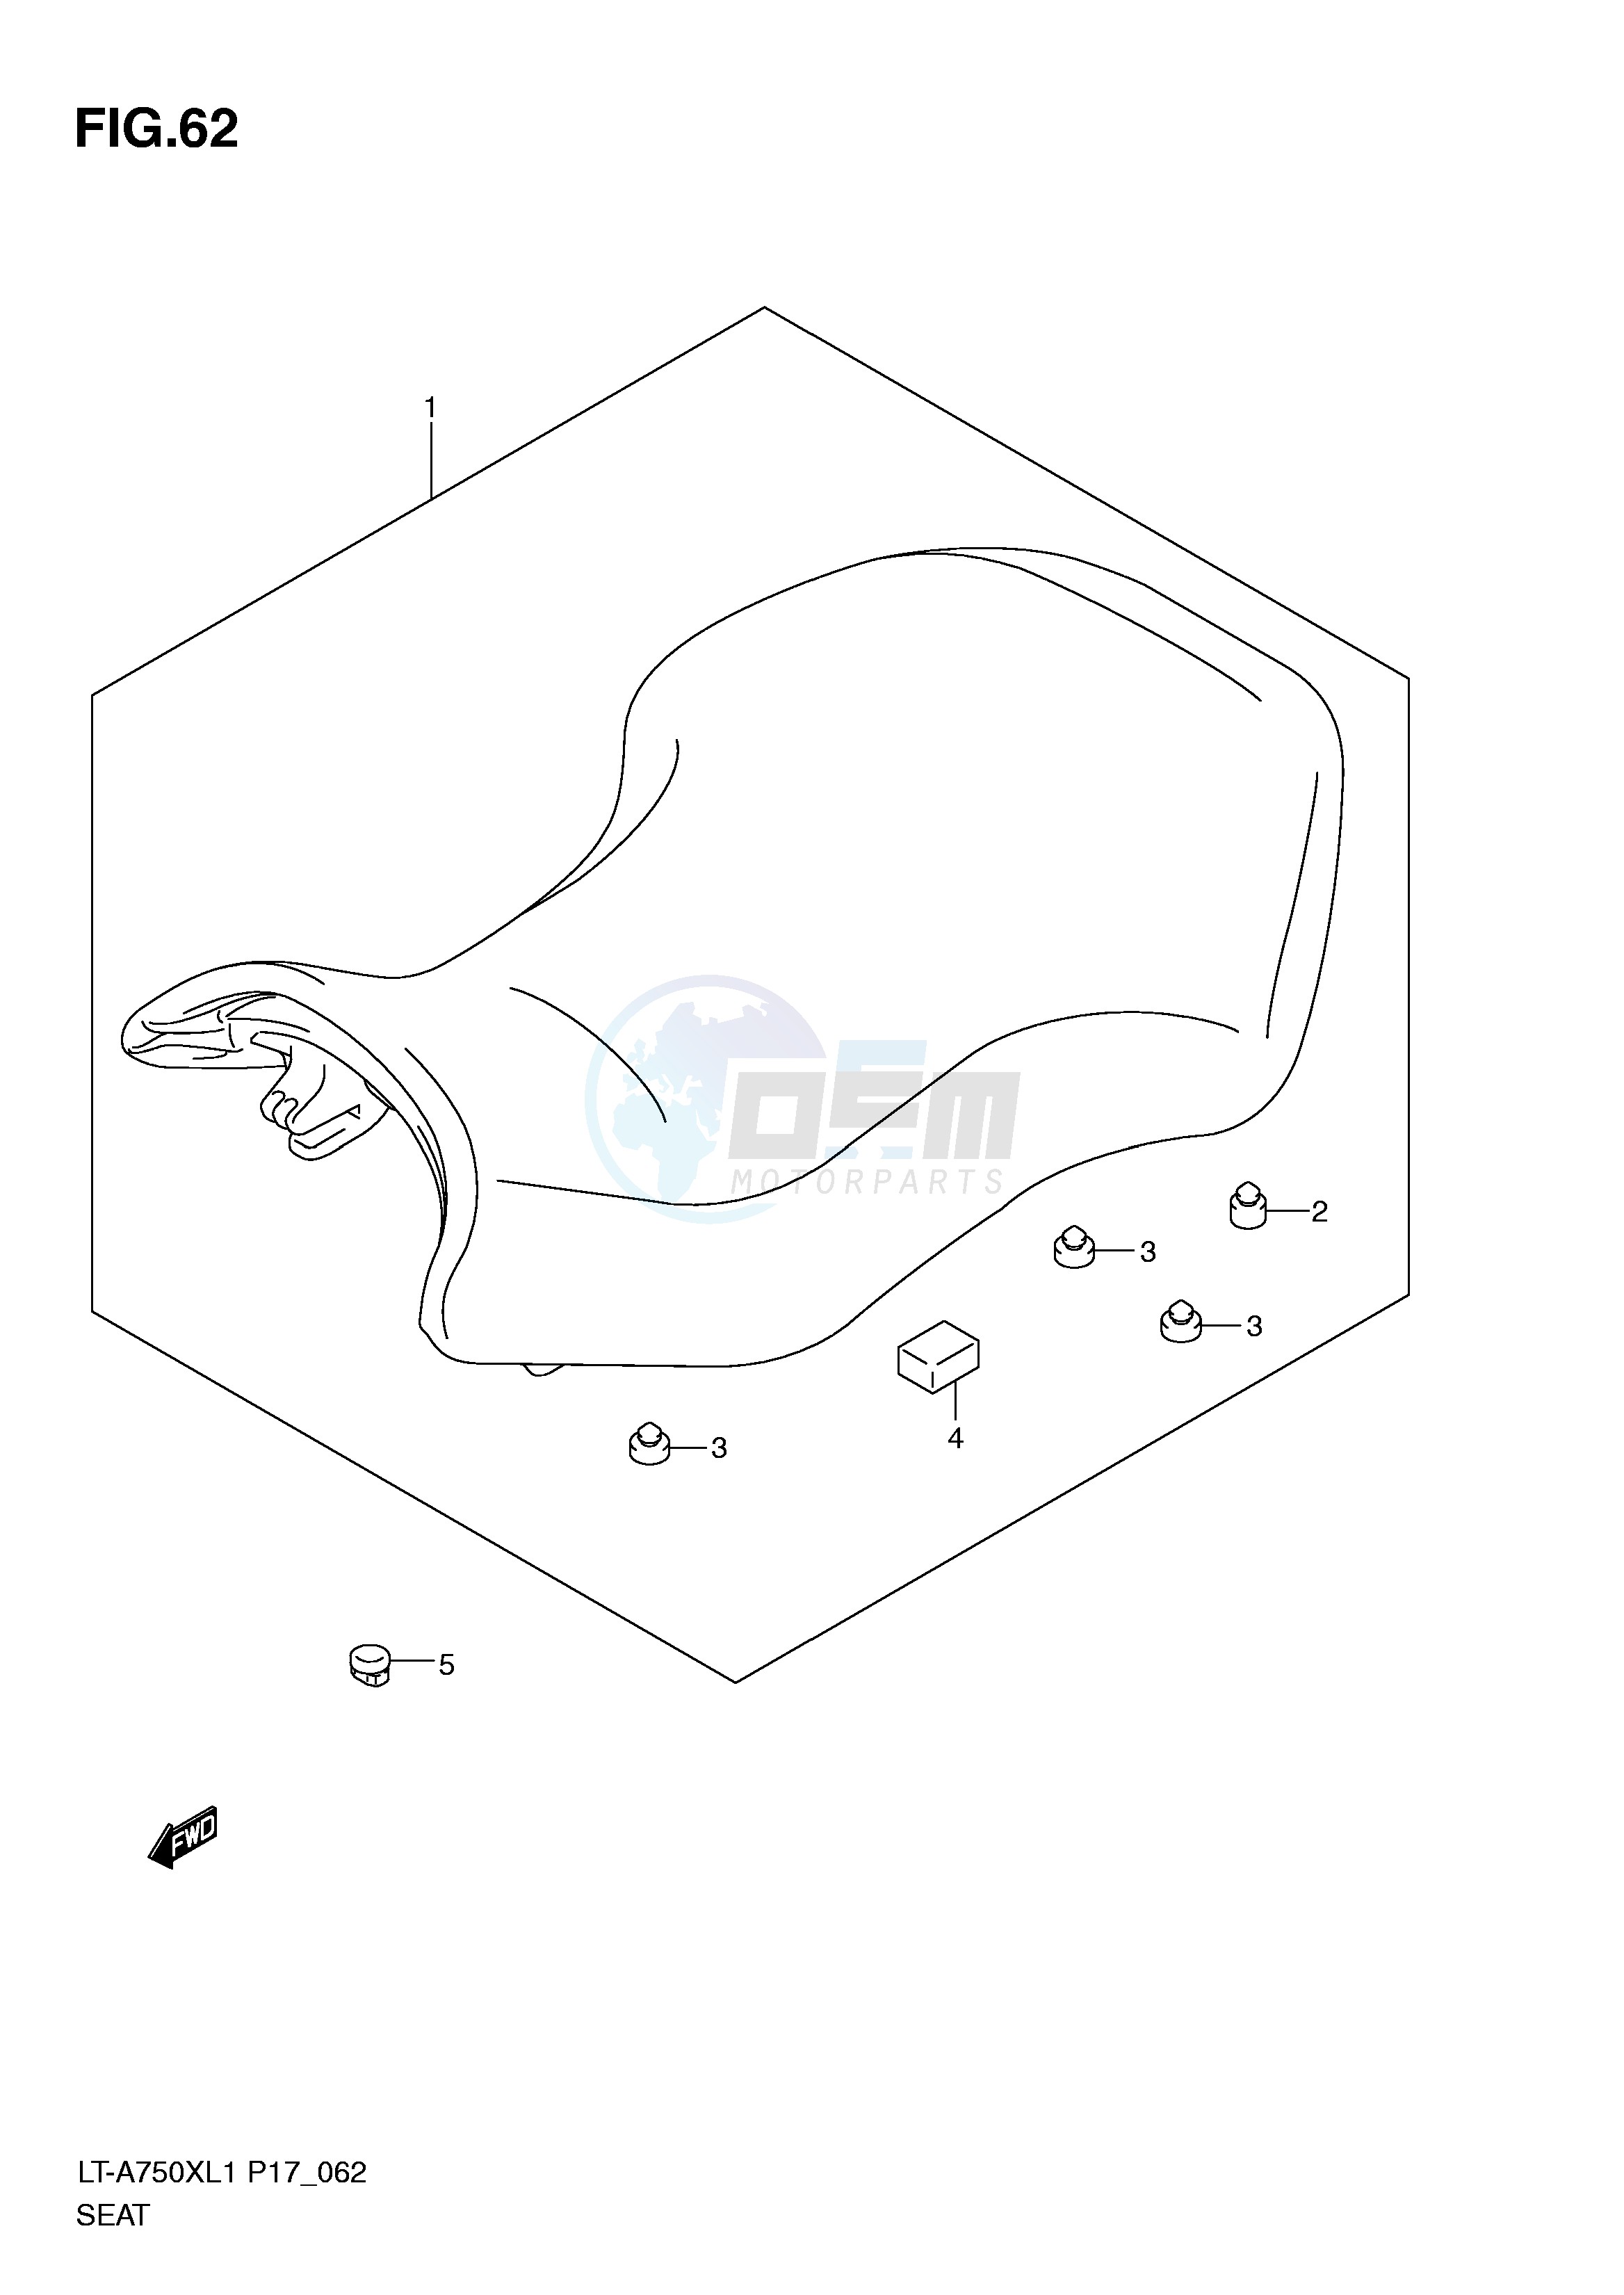 SEAT (LT-A750XL1 P24) blueprint